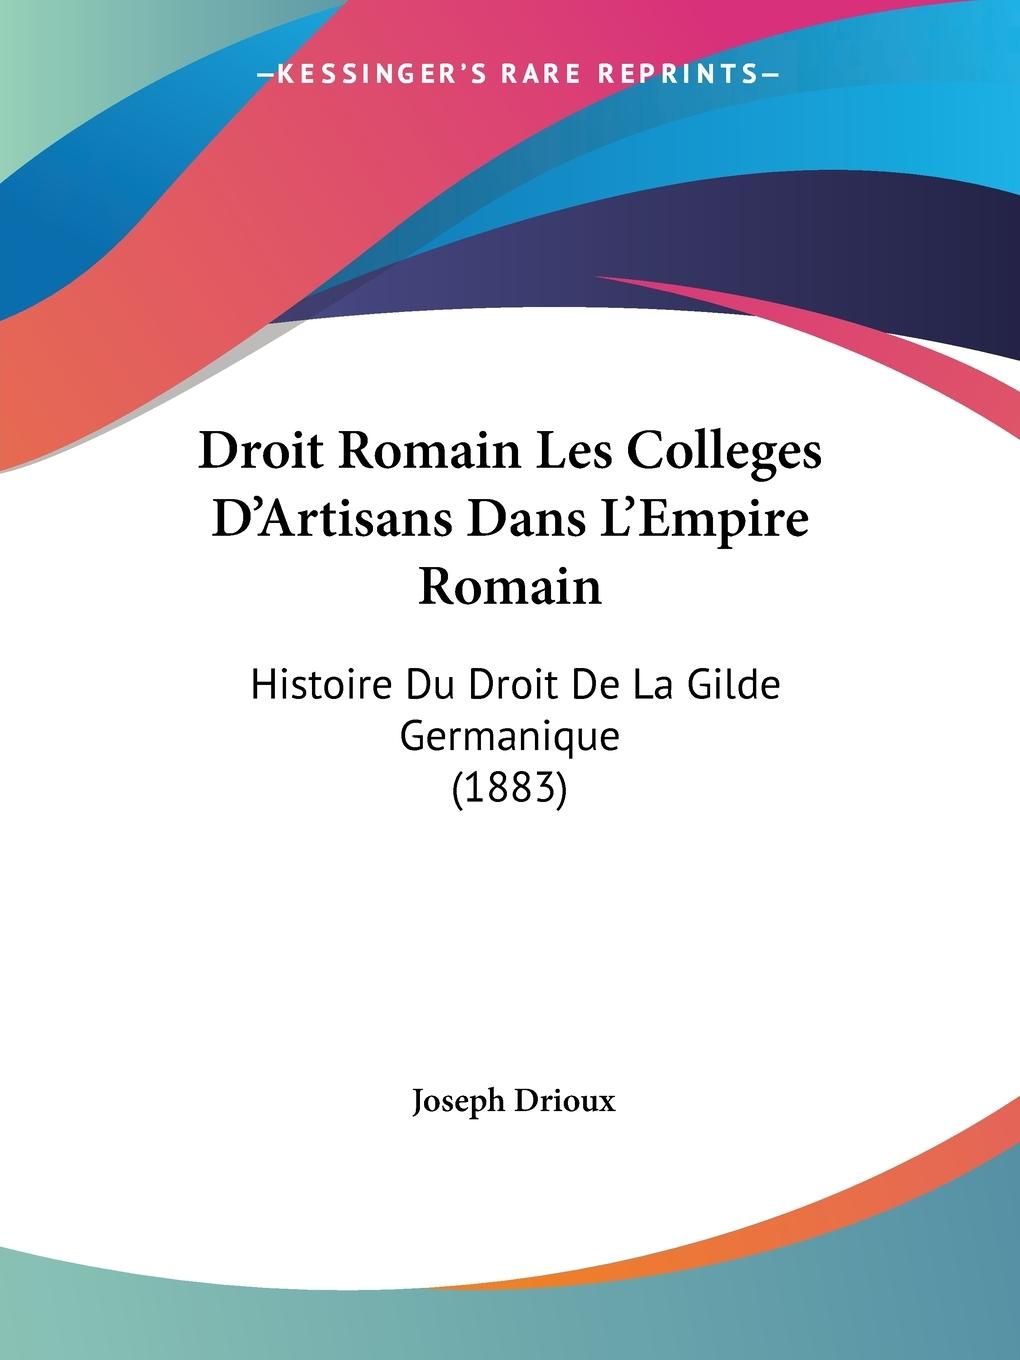 Droit Romain Les Colleges D Artisans Dans L Empire Romain - Drioux, Joseph